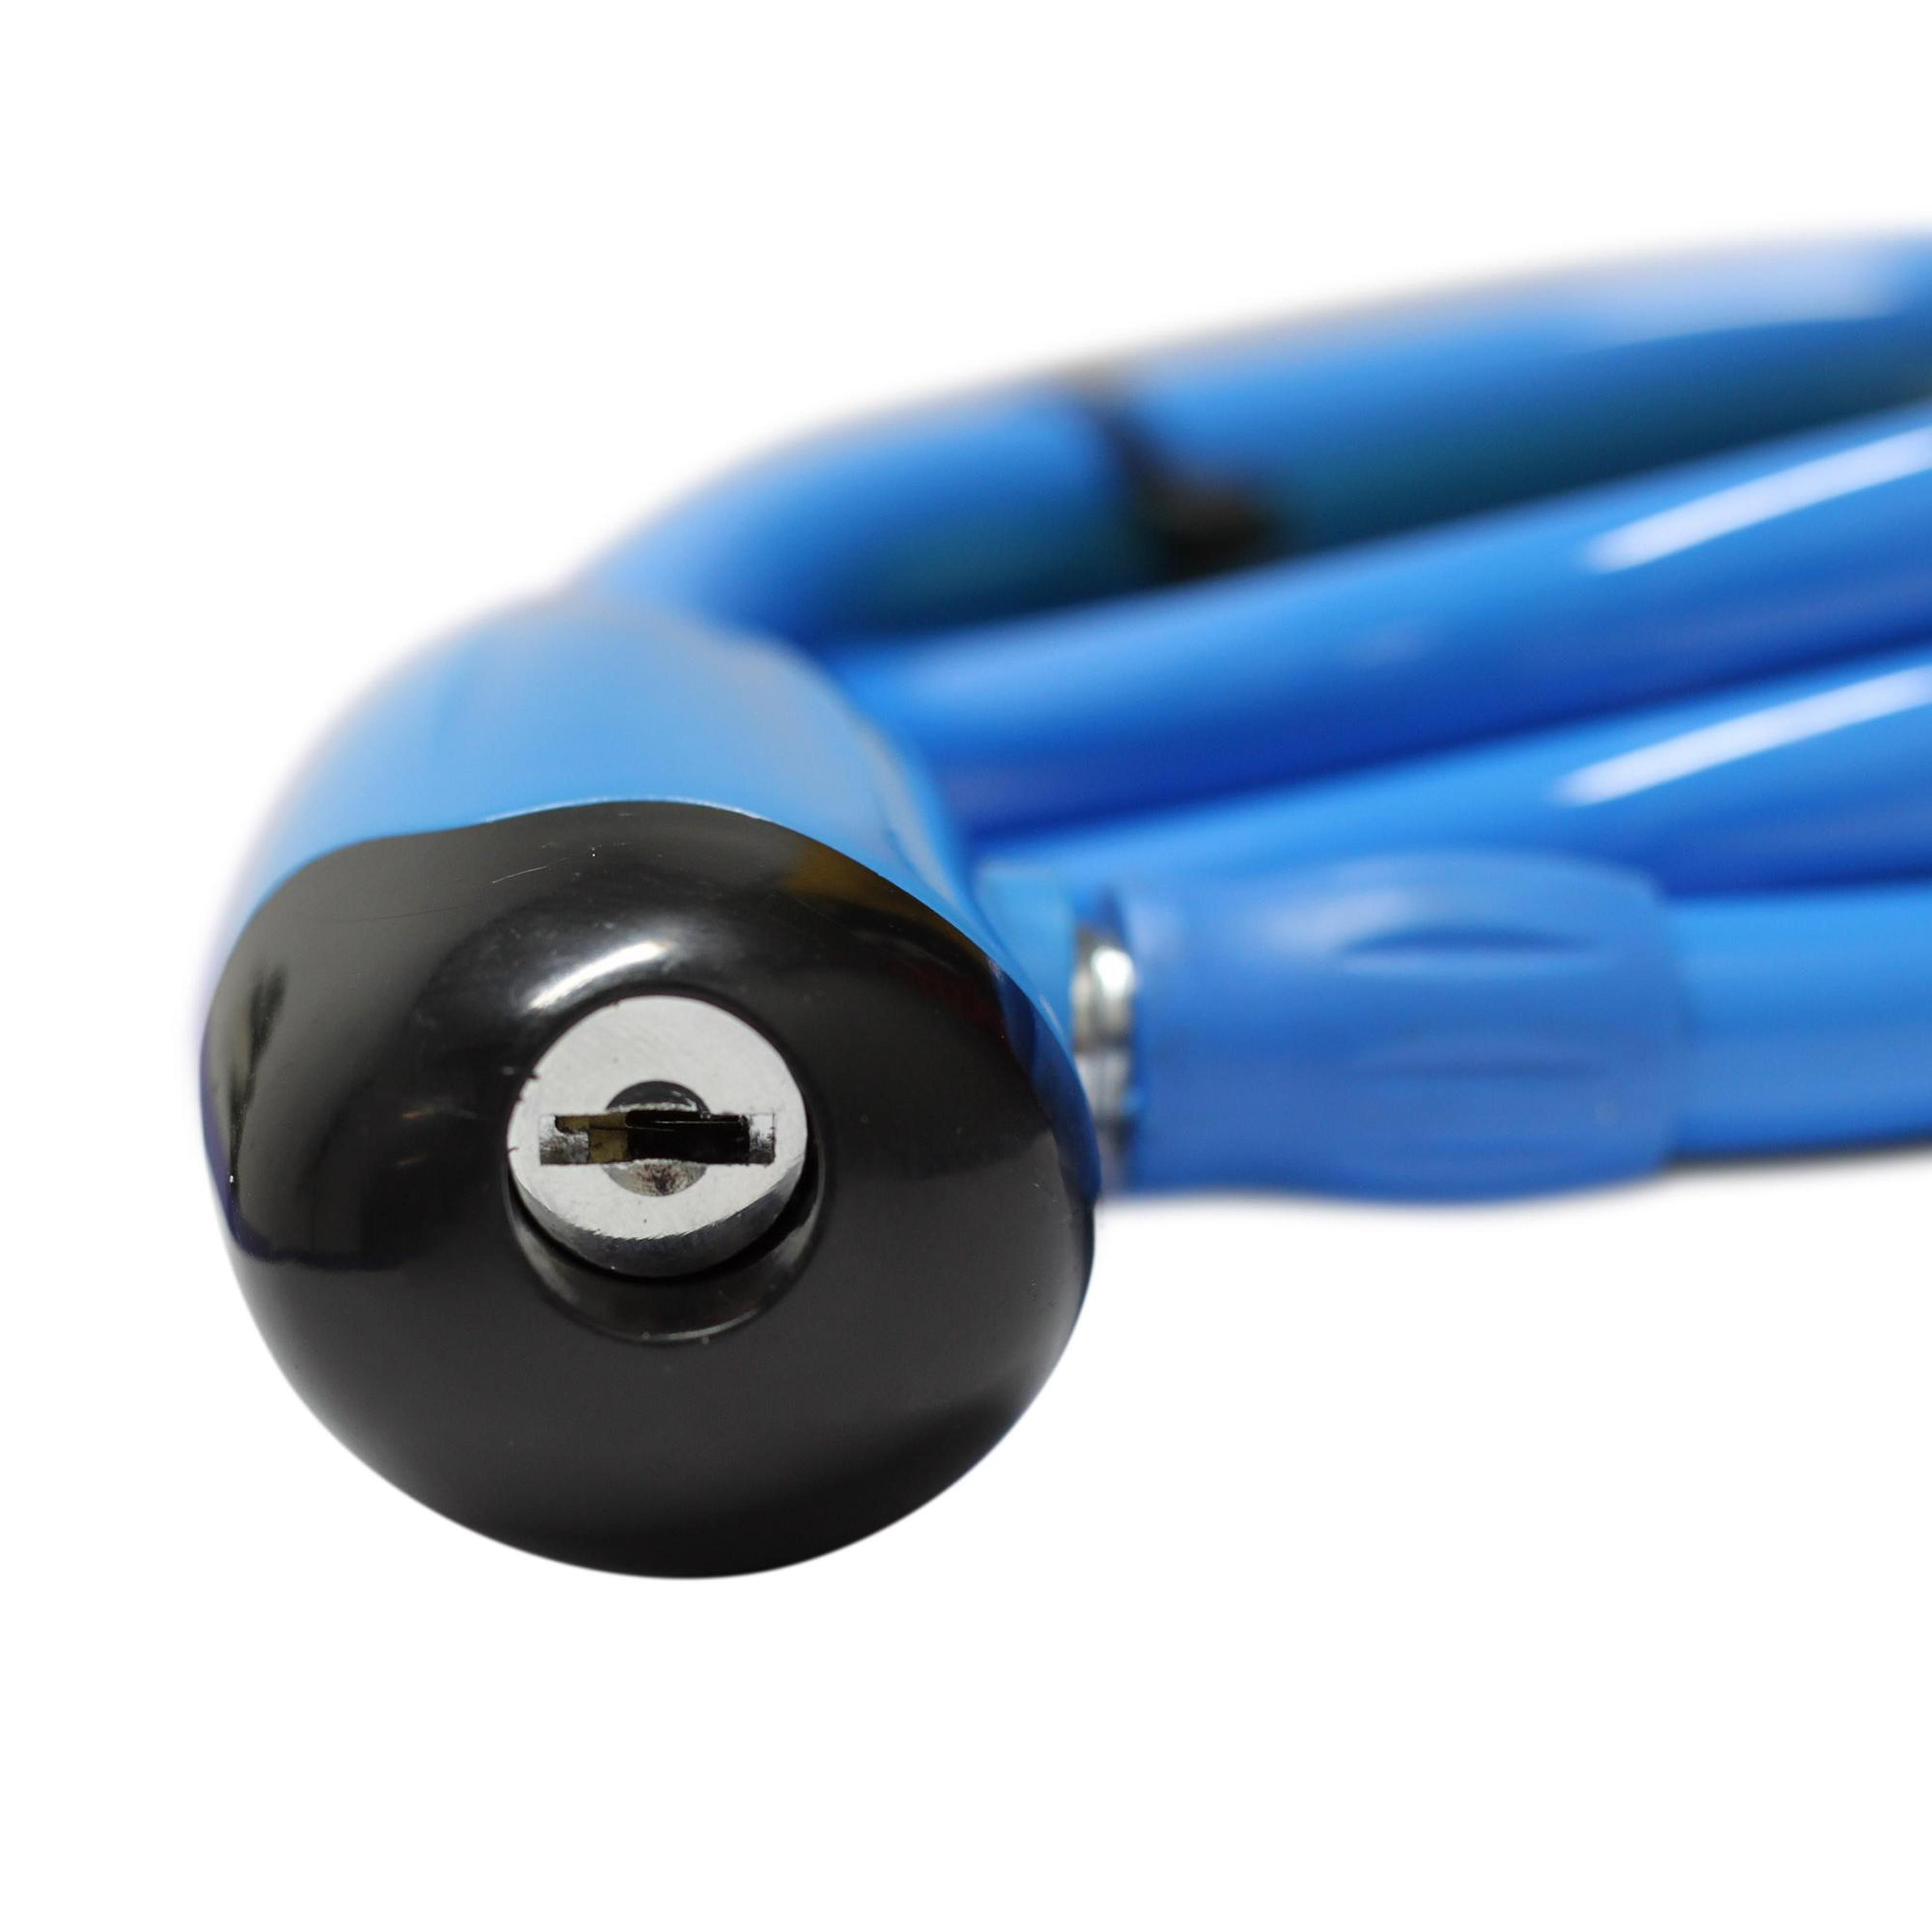 Cable Candado de Acero GOLDEN KEY 1.2 * 100 cm Azul Claro